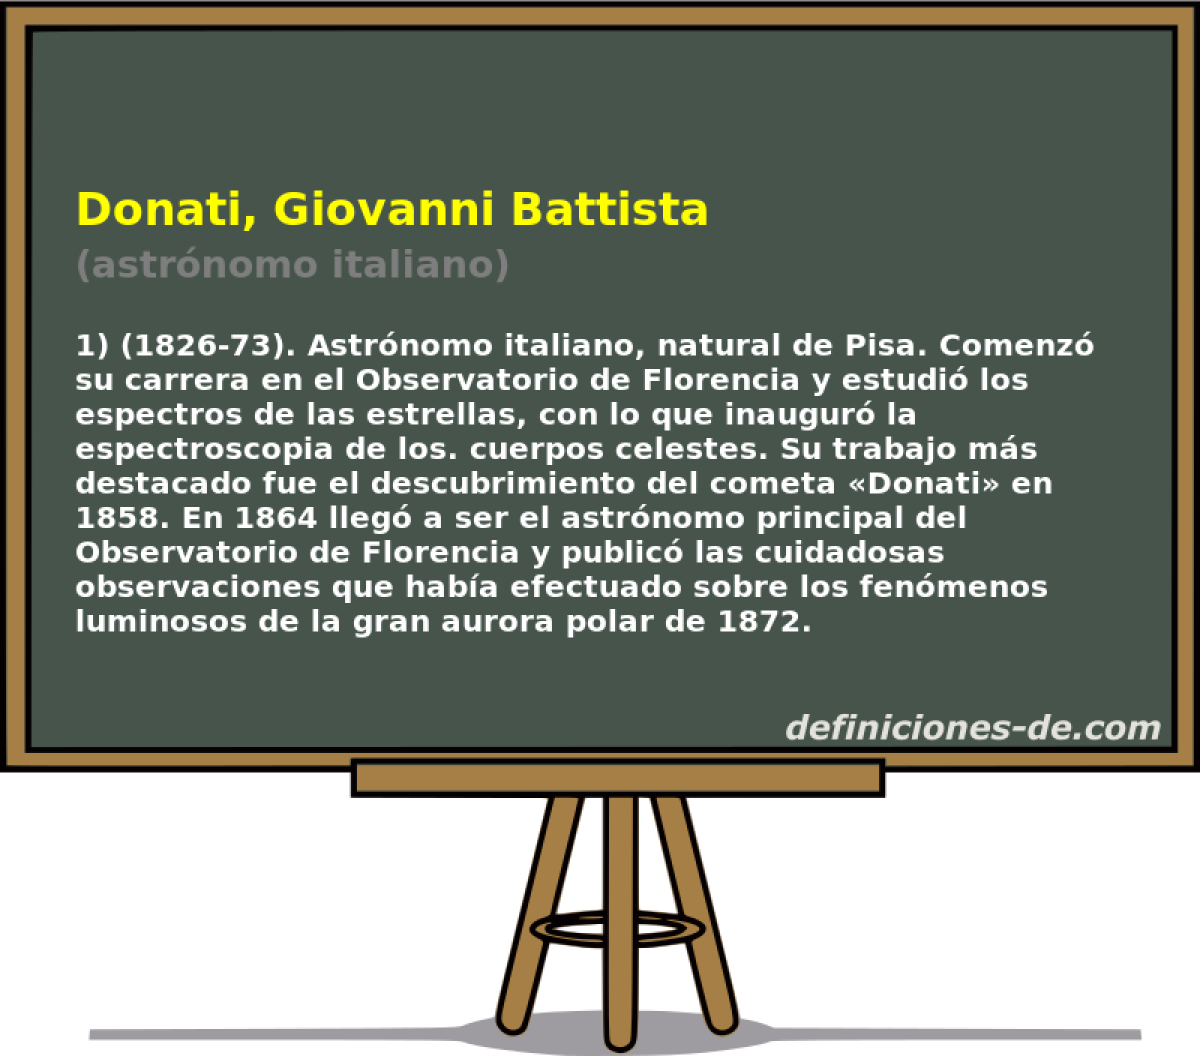 Donati, Giovanni Battista (astrnomo italiano)